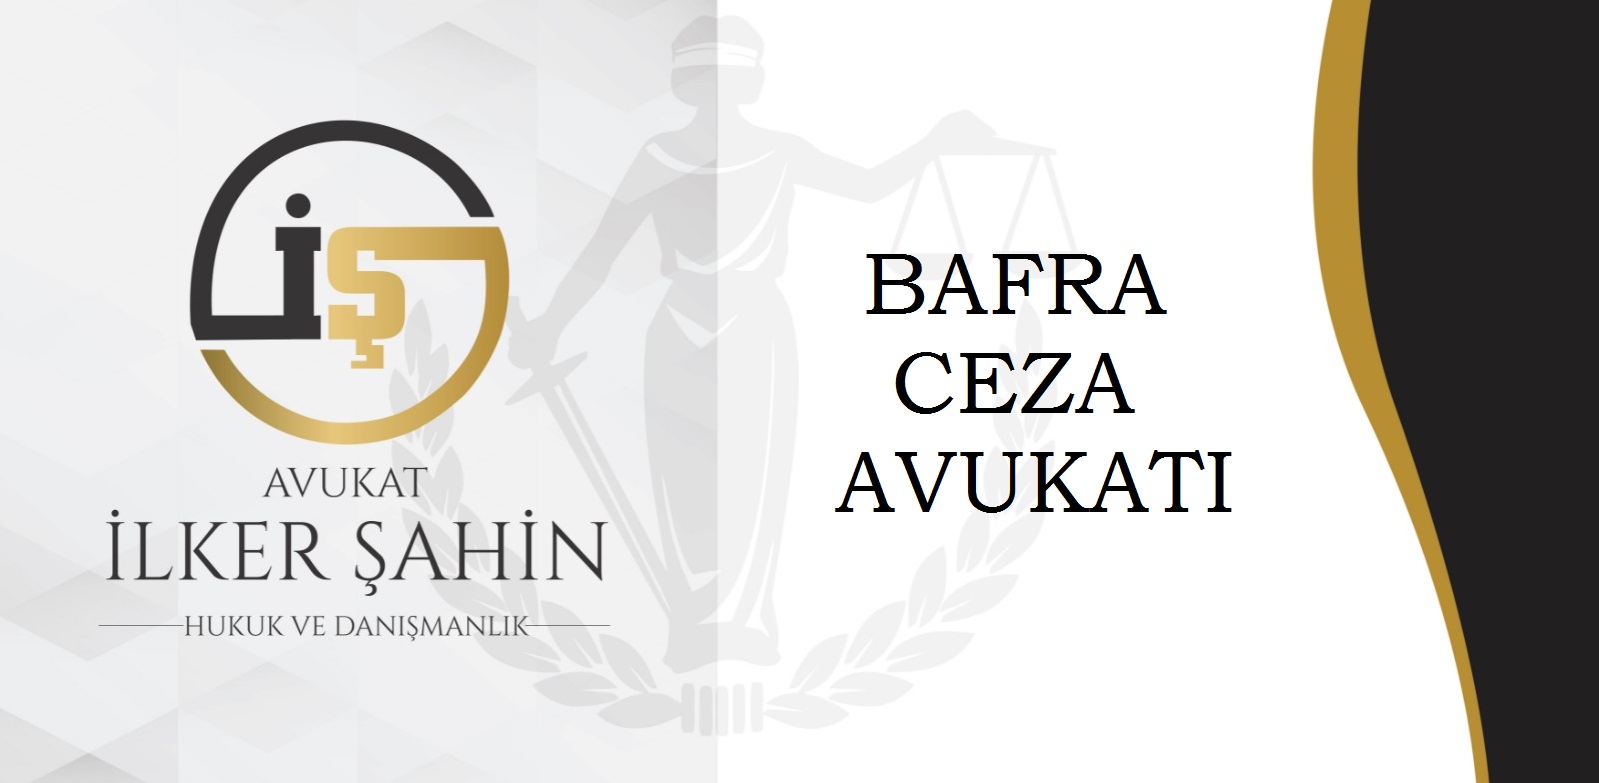 Bafra Ceza Avukatı